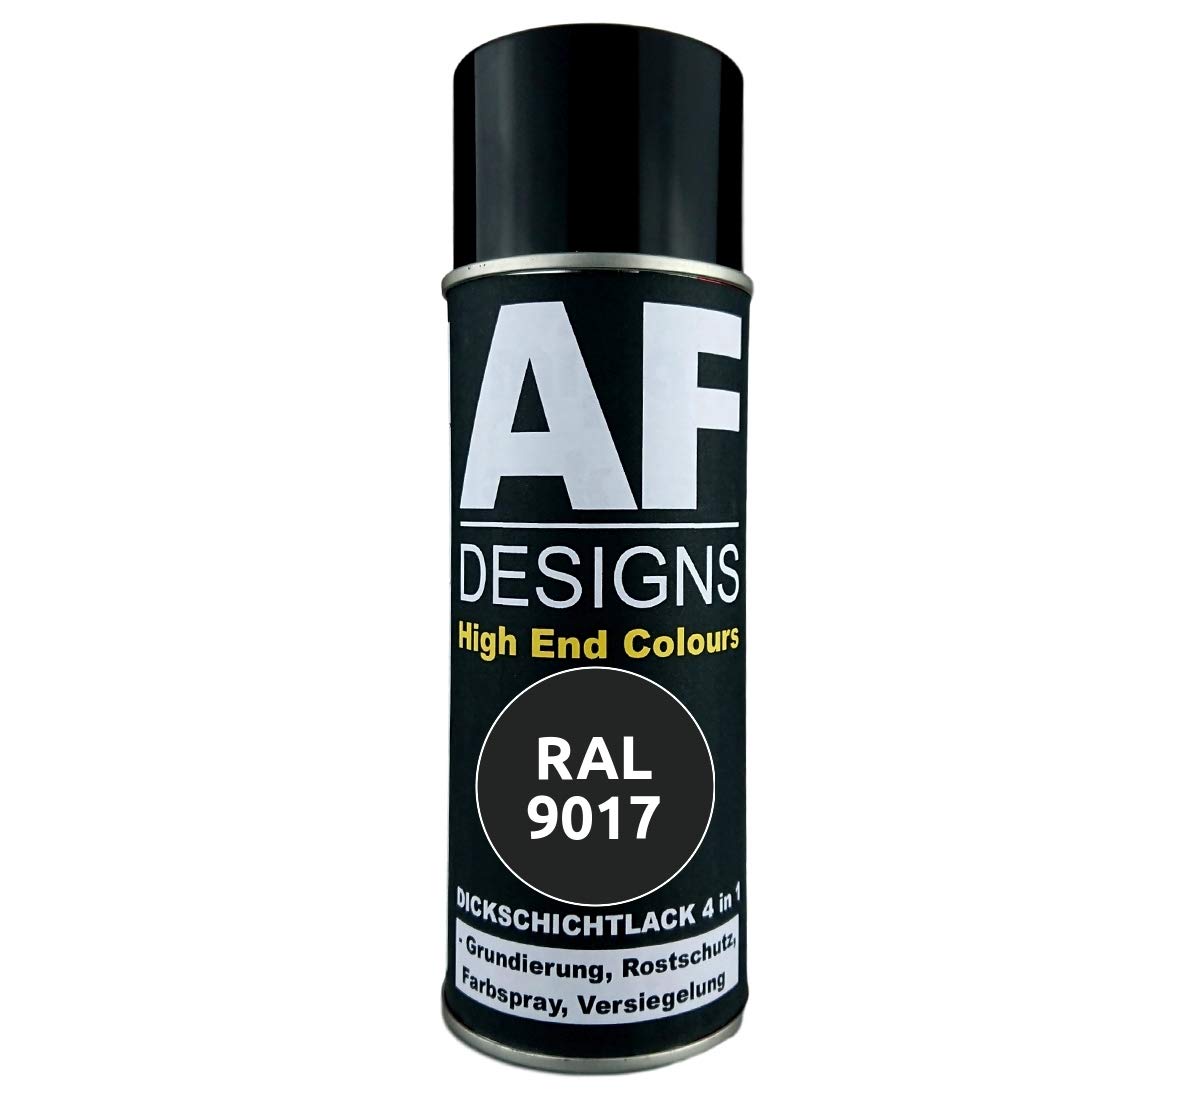 4 in 1 RAL 9017 Verkehrsschwarz Dickschichtlack Lack Spray Spraydose von Alex Flittner Designs